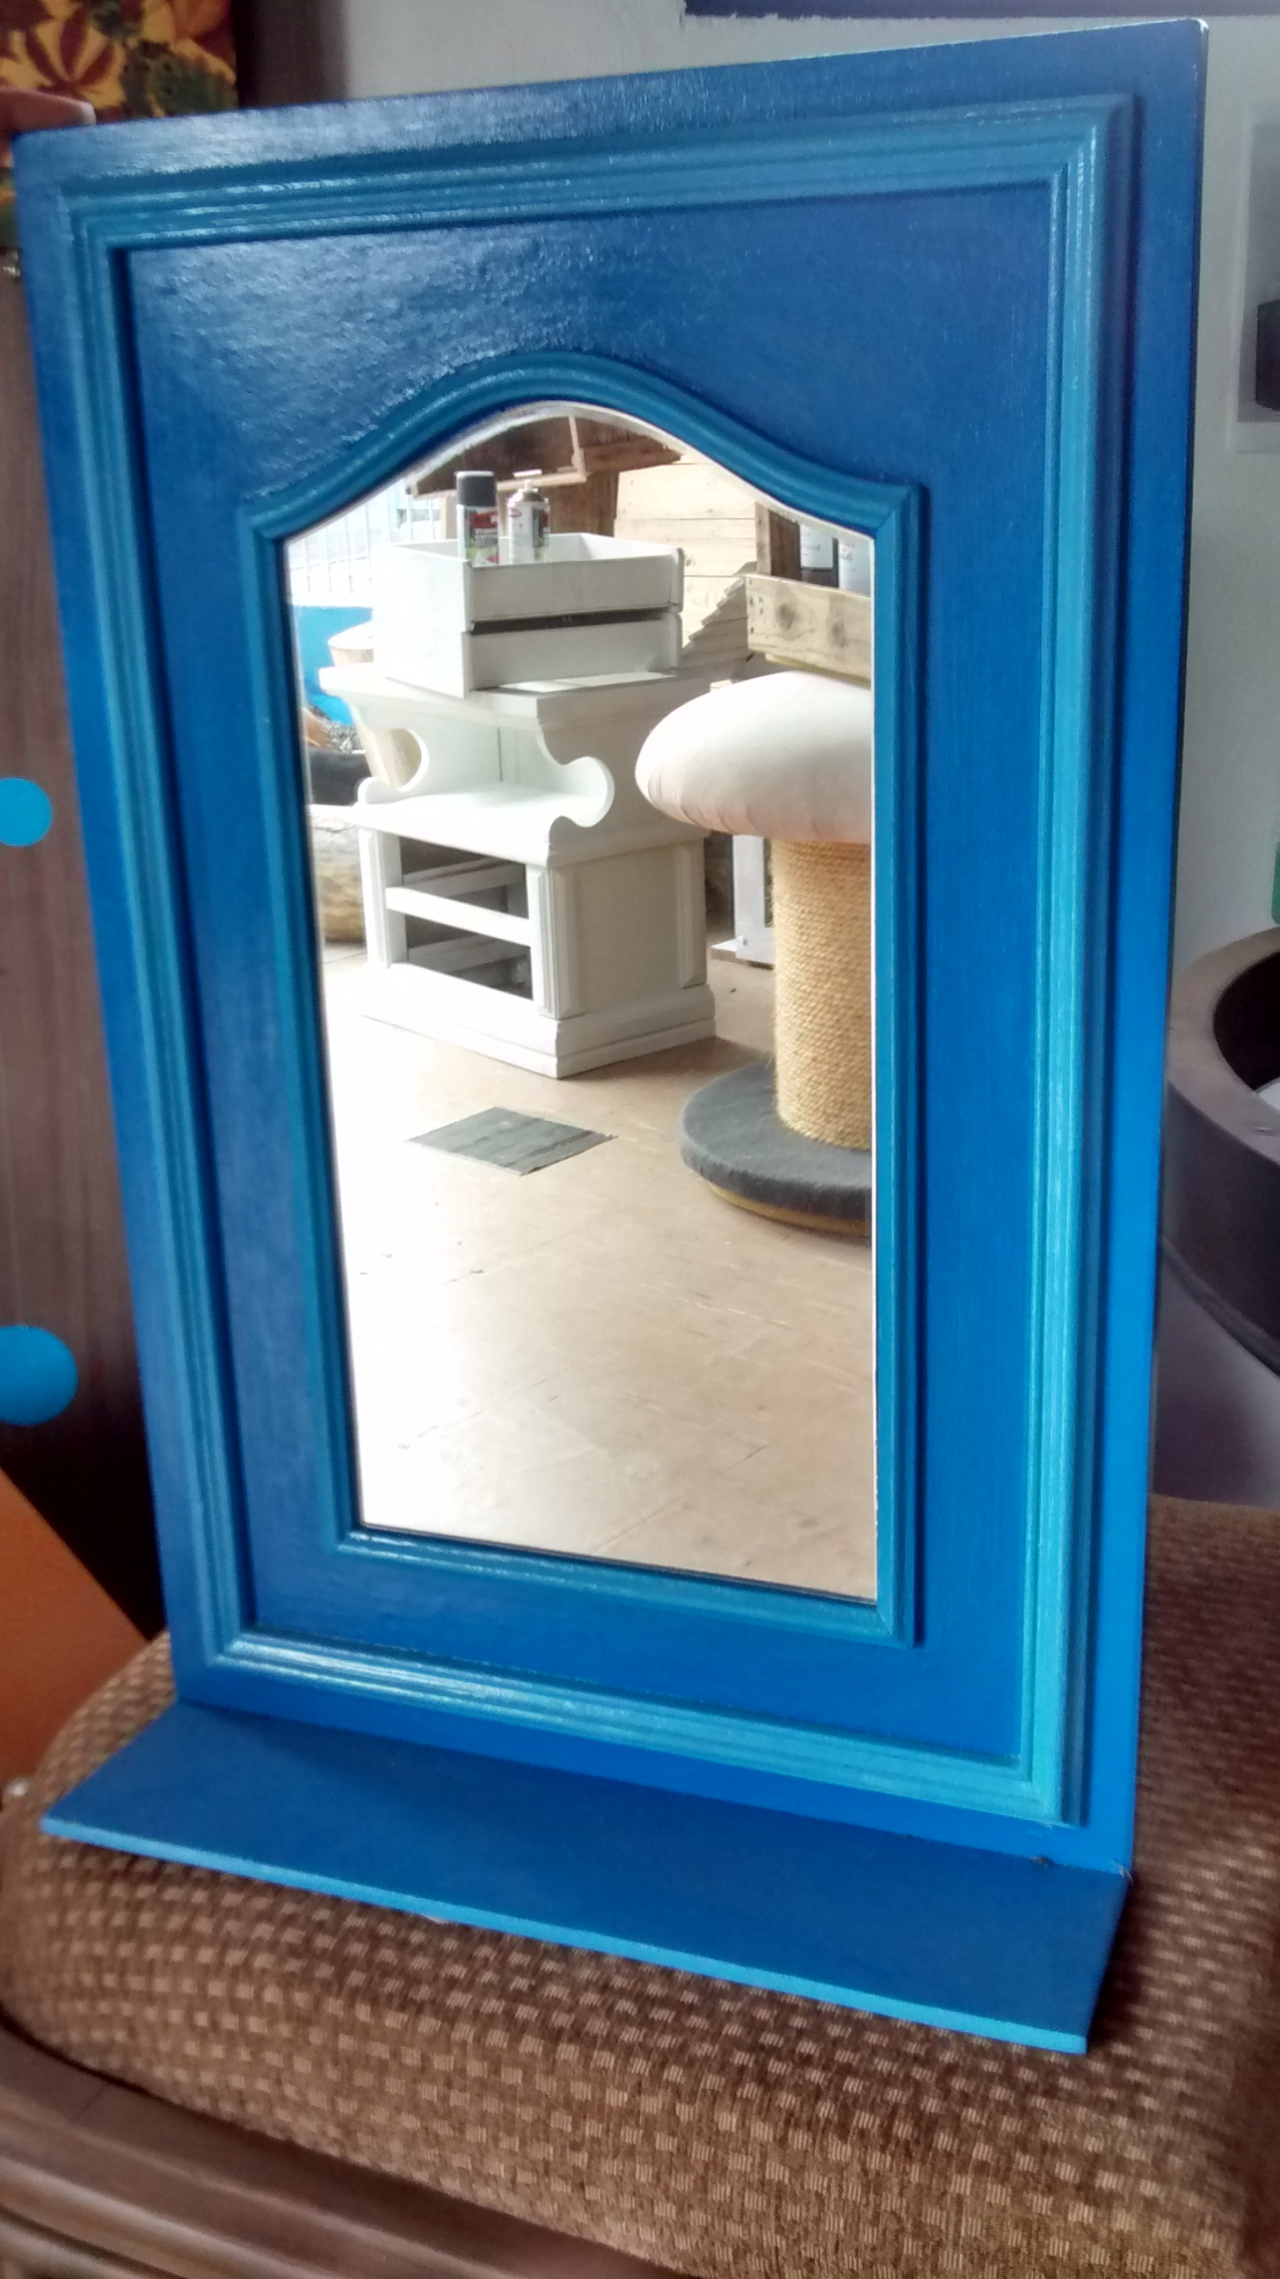 Porta de armário ganhou vida nova como espelho e sai por R$ 95.